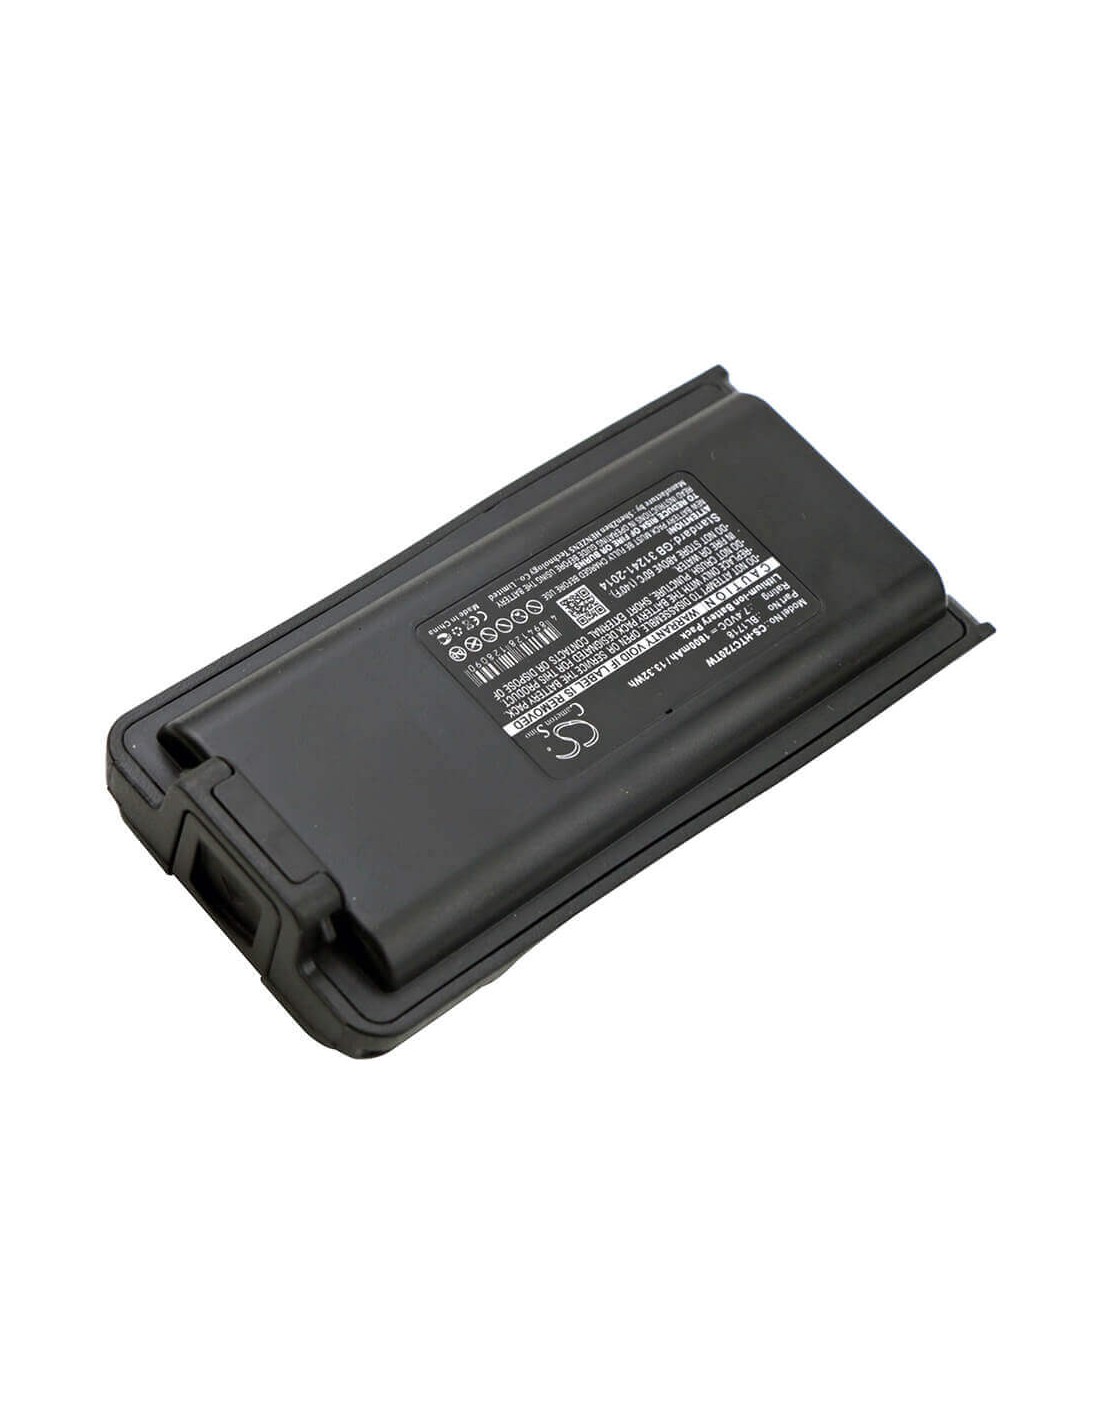 Battery for Hyt Tc3000g, Tc700g, Tc-720s 7.4V, 1800mAh - 13.32Wh